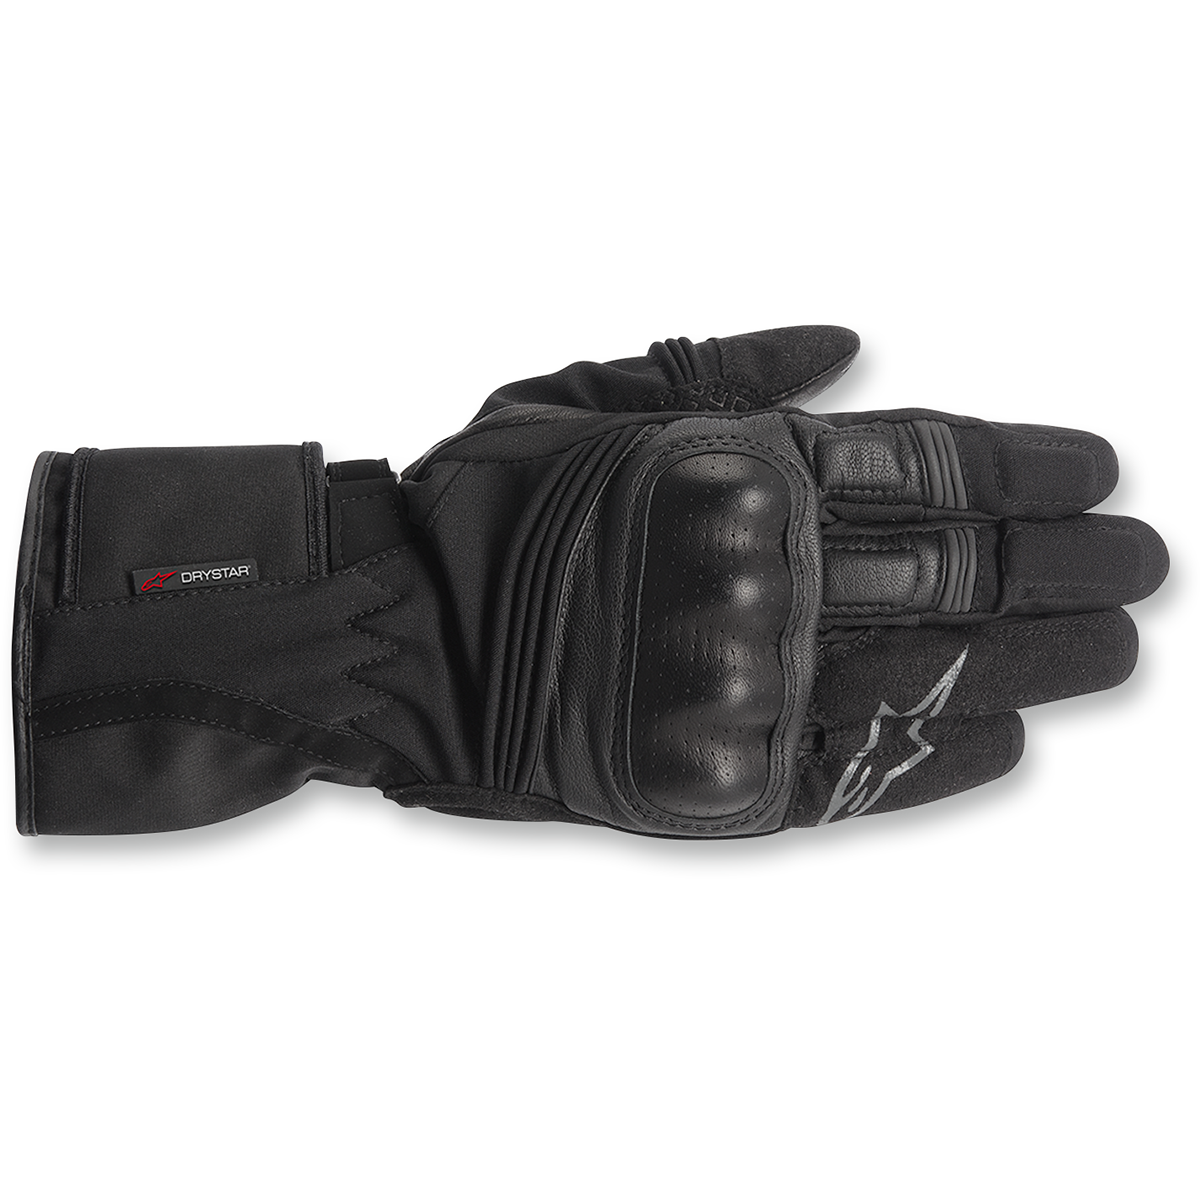 Valparaiso Drystar® Gloves